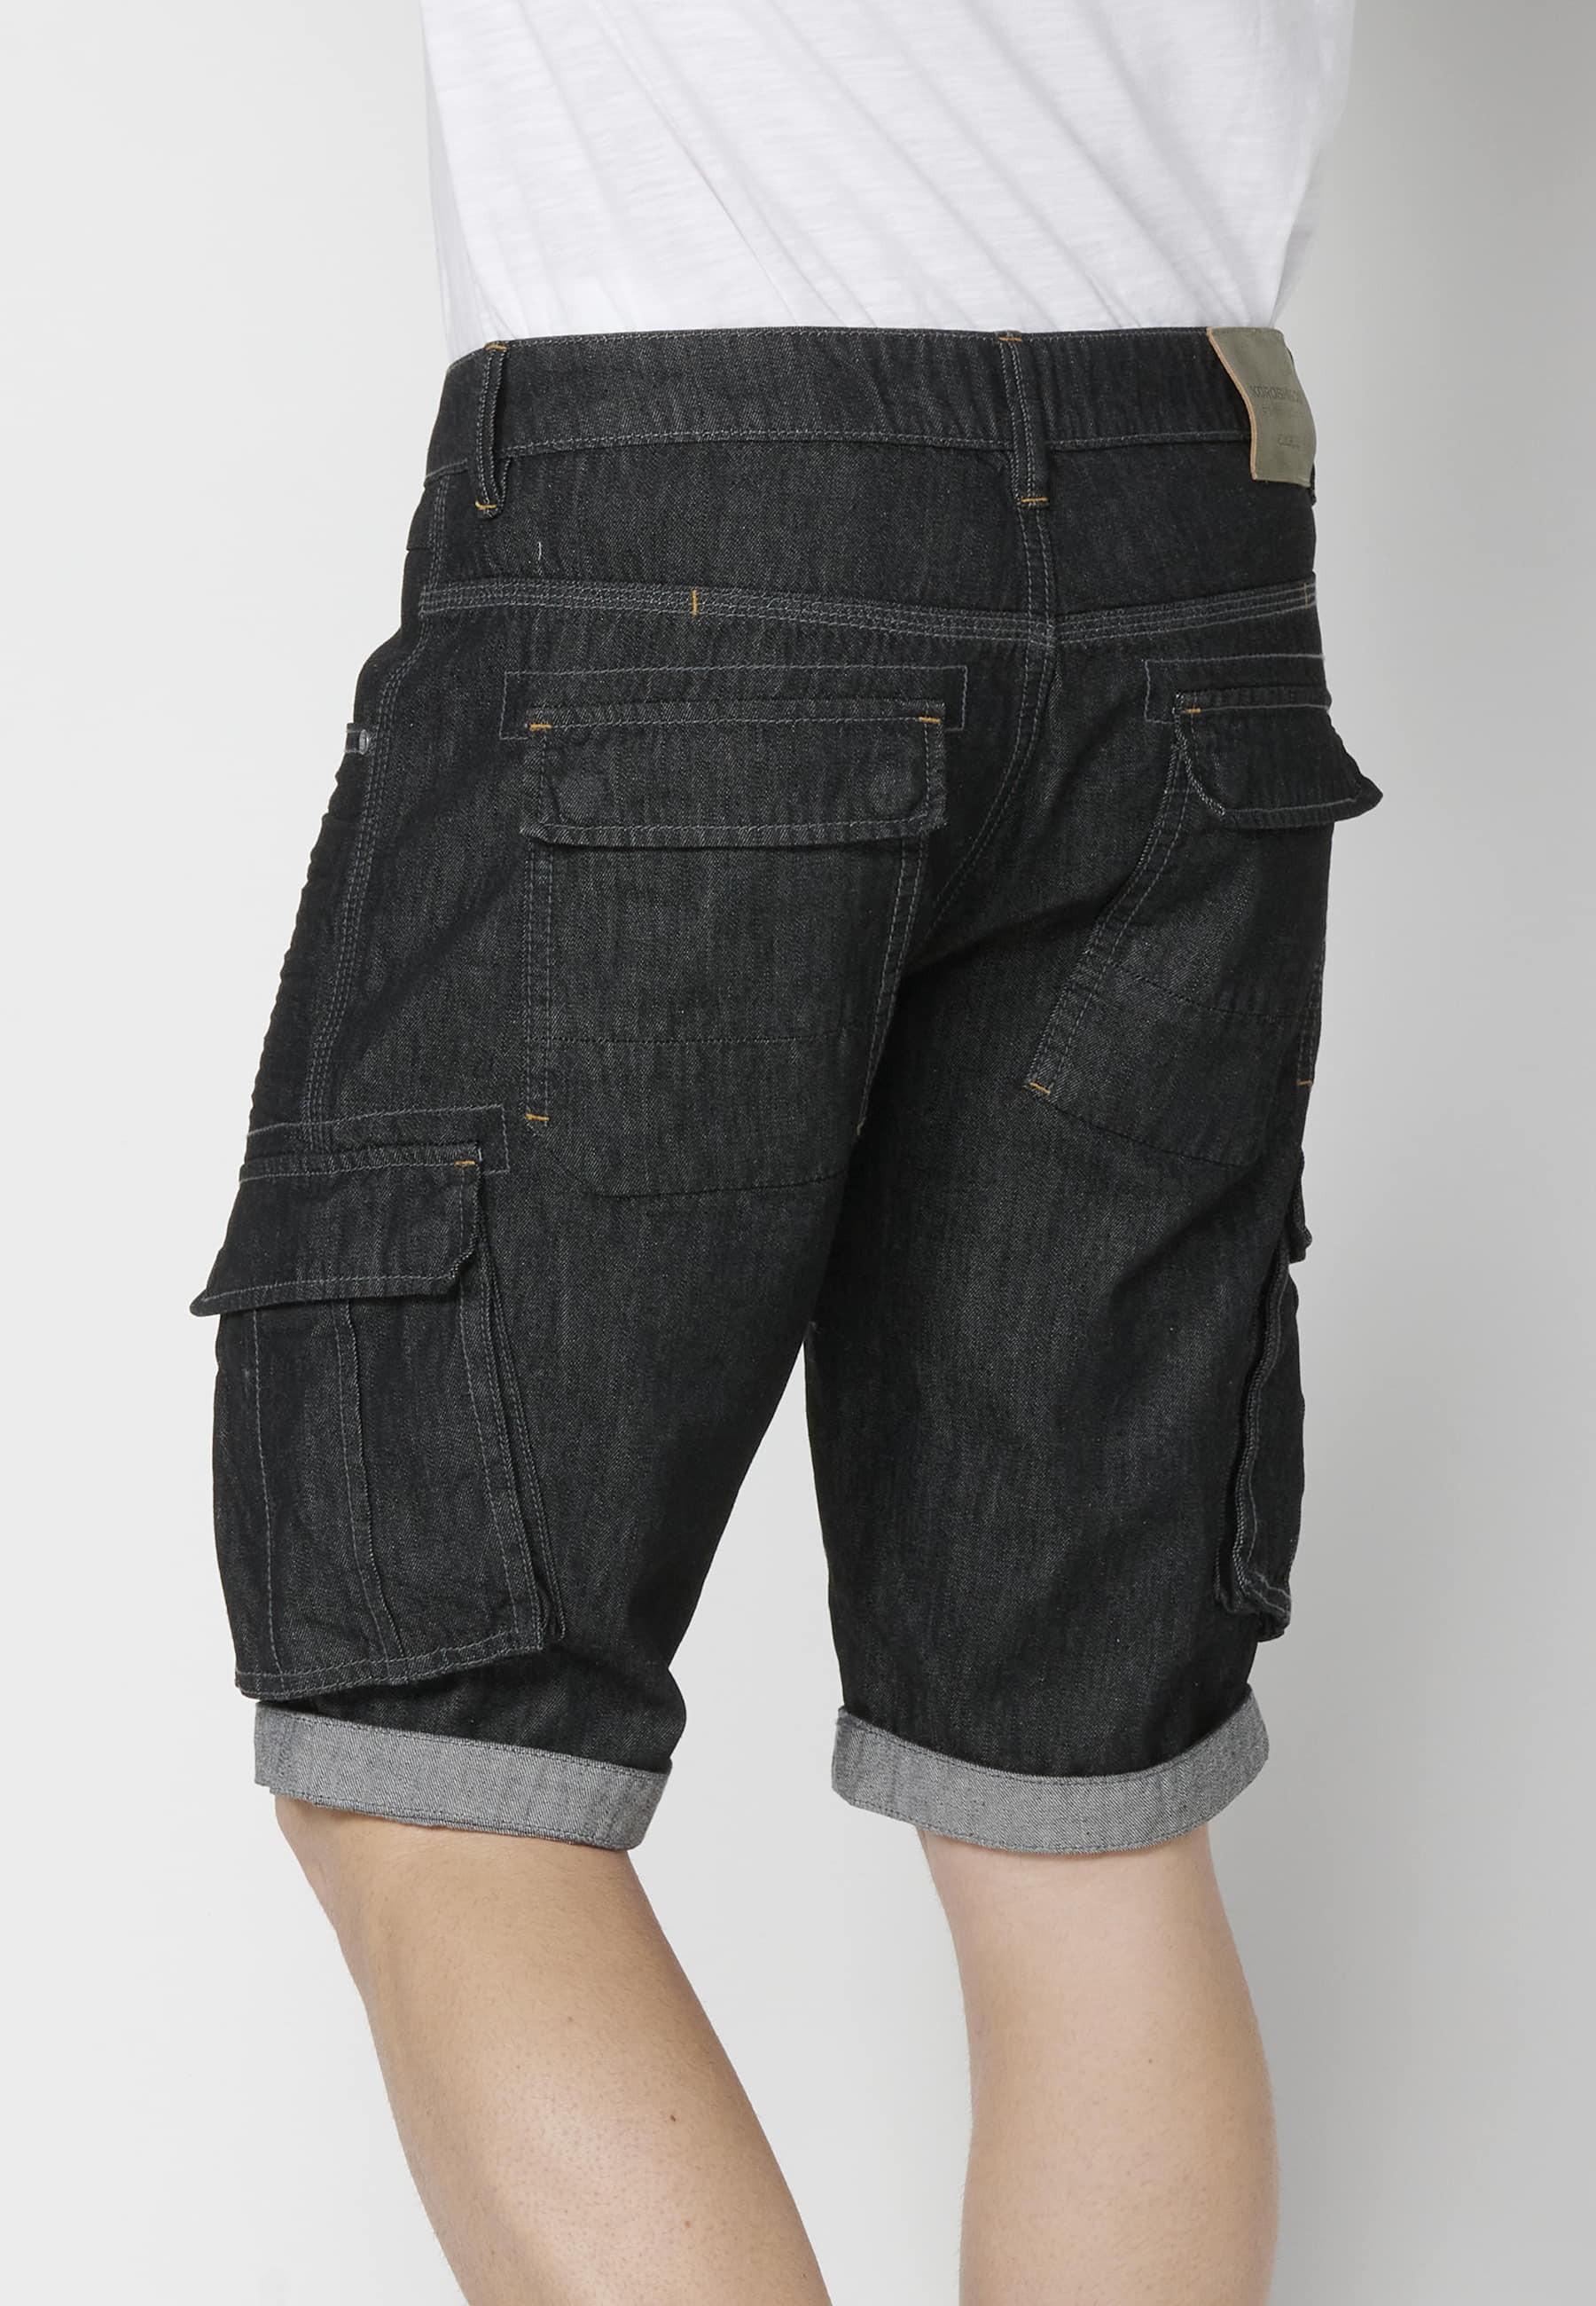 Shorts Bermuda Denim Stretch Regular Fit with four pockets Black color for Men 7